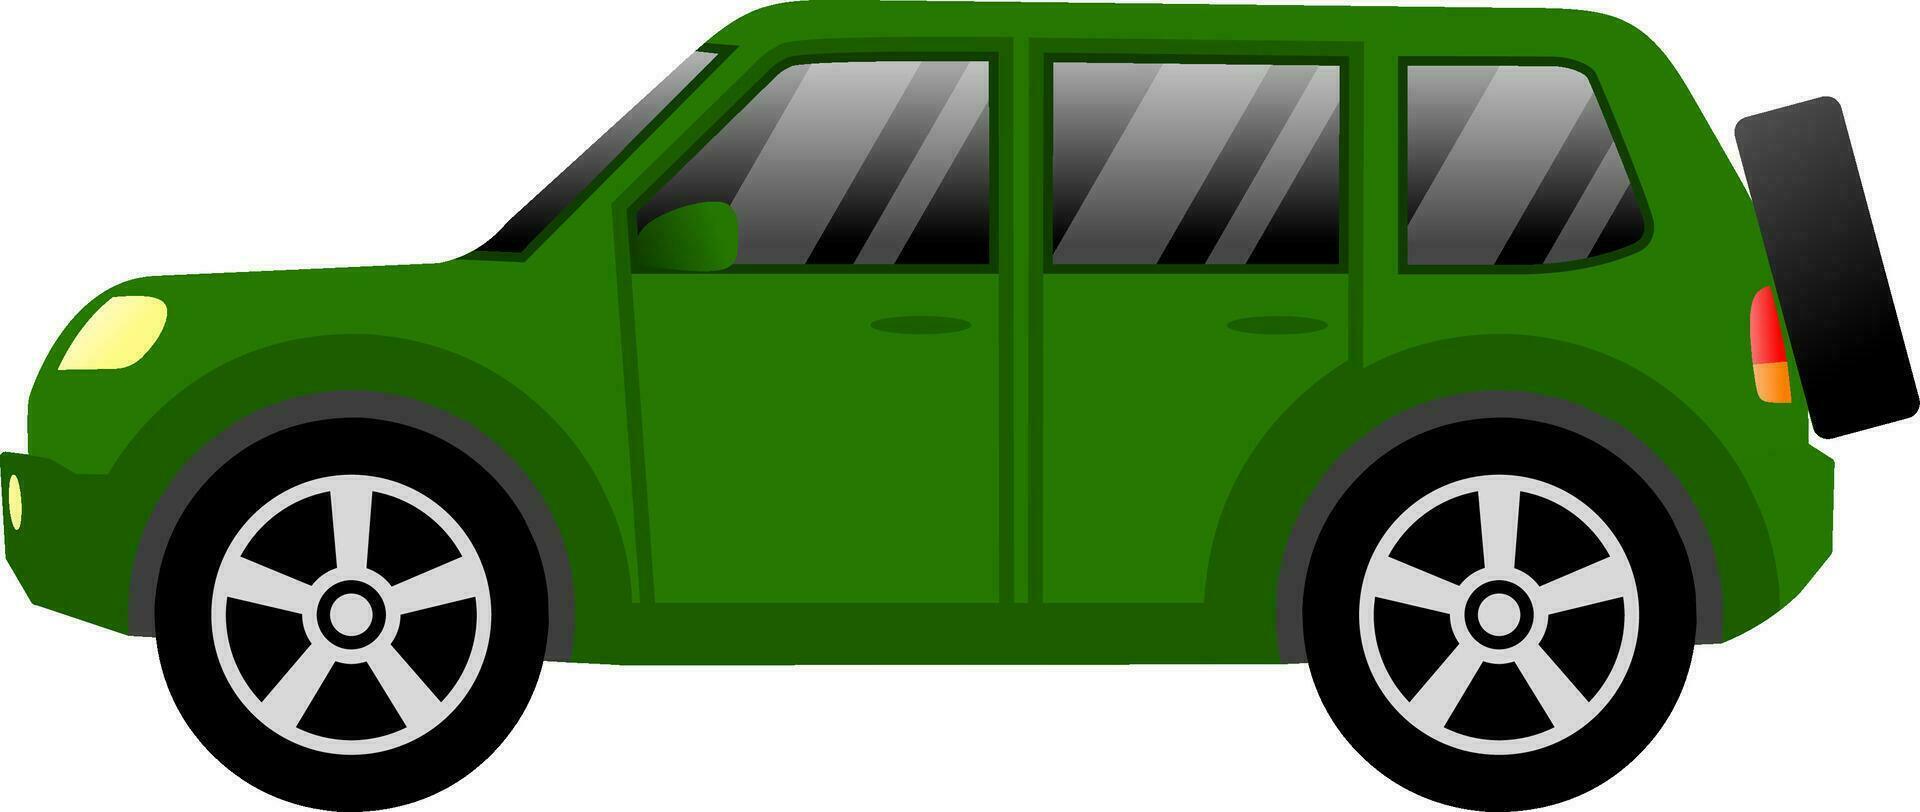 suv voiture vecteur illustration. suv voiture avec vert Couleur pour icône, symbole ou signe. sport utilitaire véhicule pour conception à propos voiture, transport, automobile et voiture